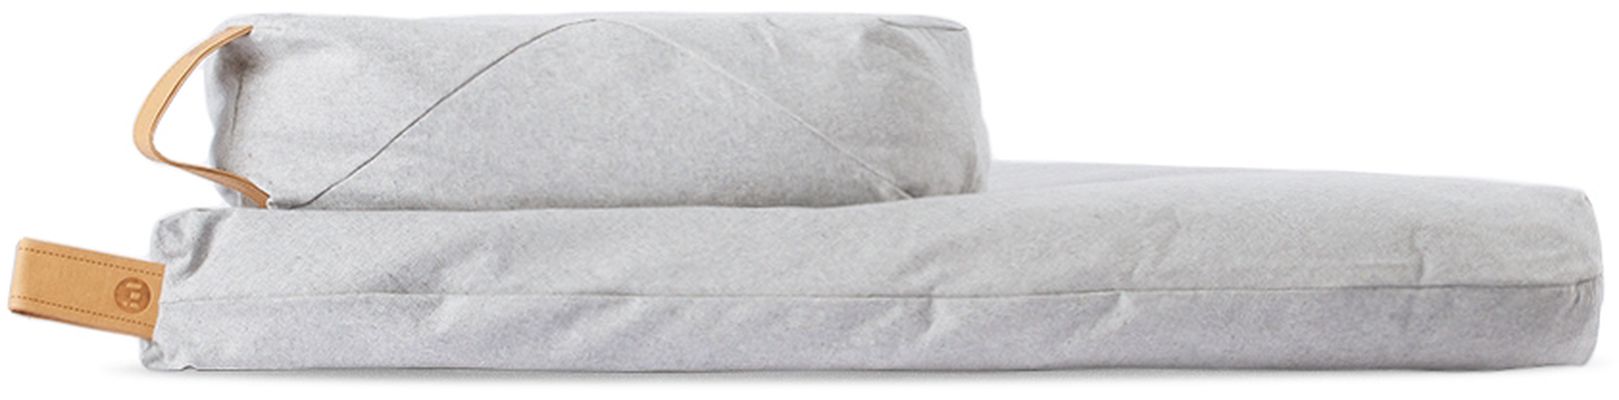 project full Gray Natural Canvas Meditation Cushion Set